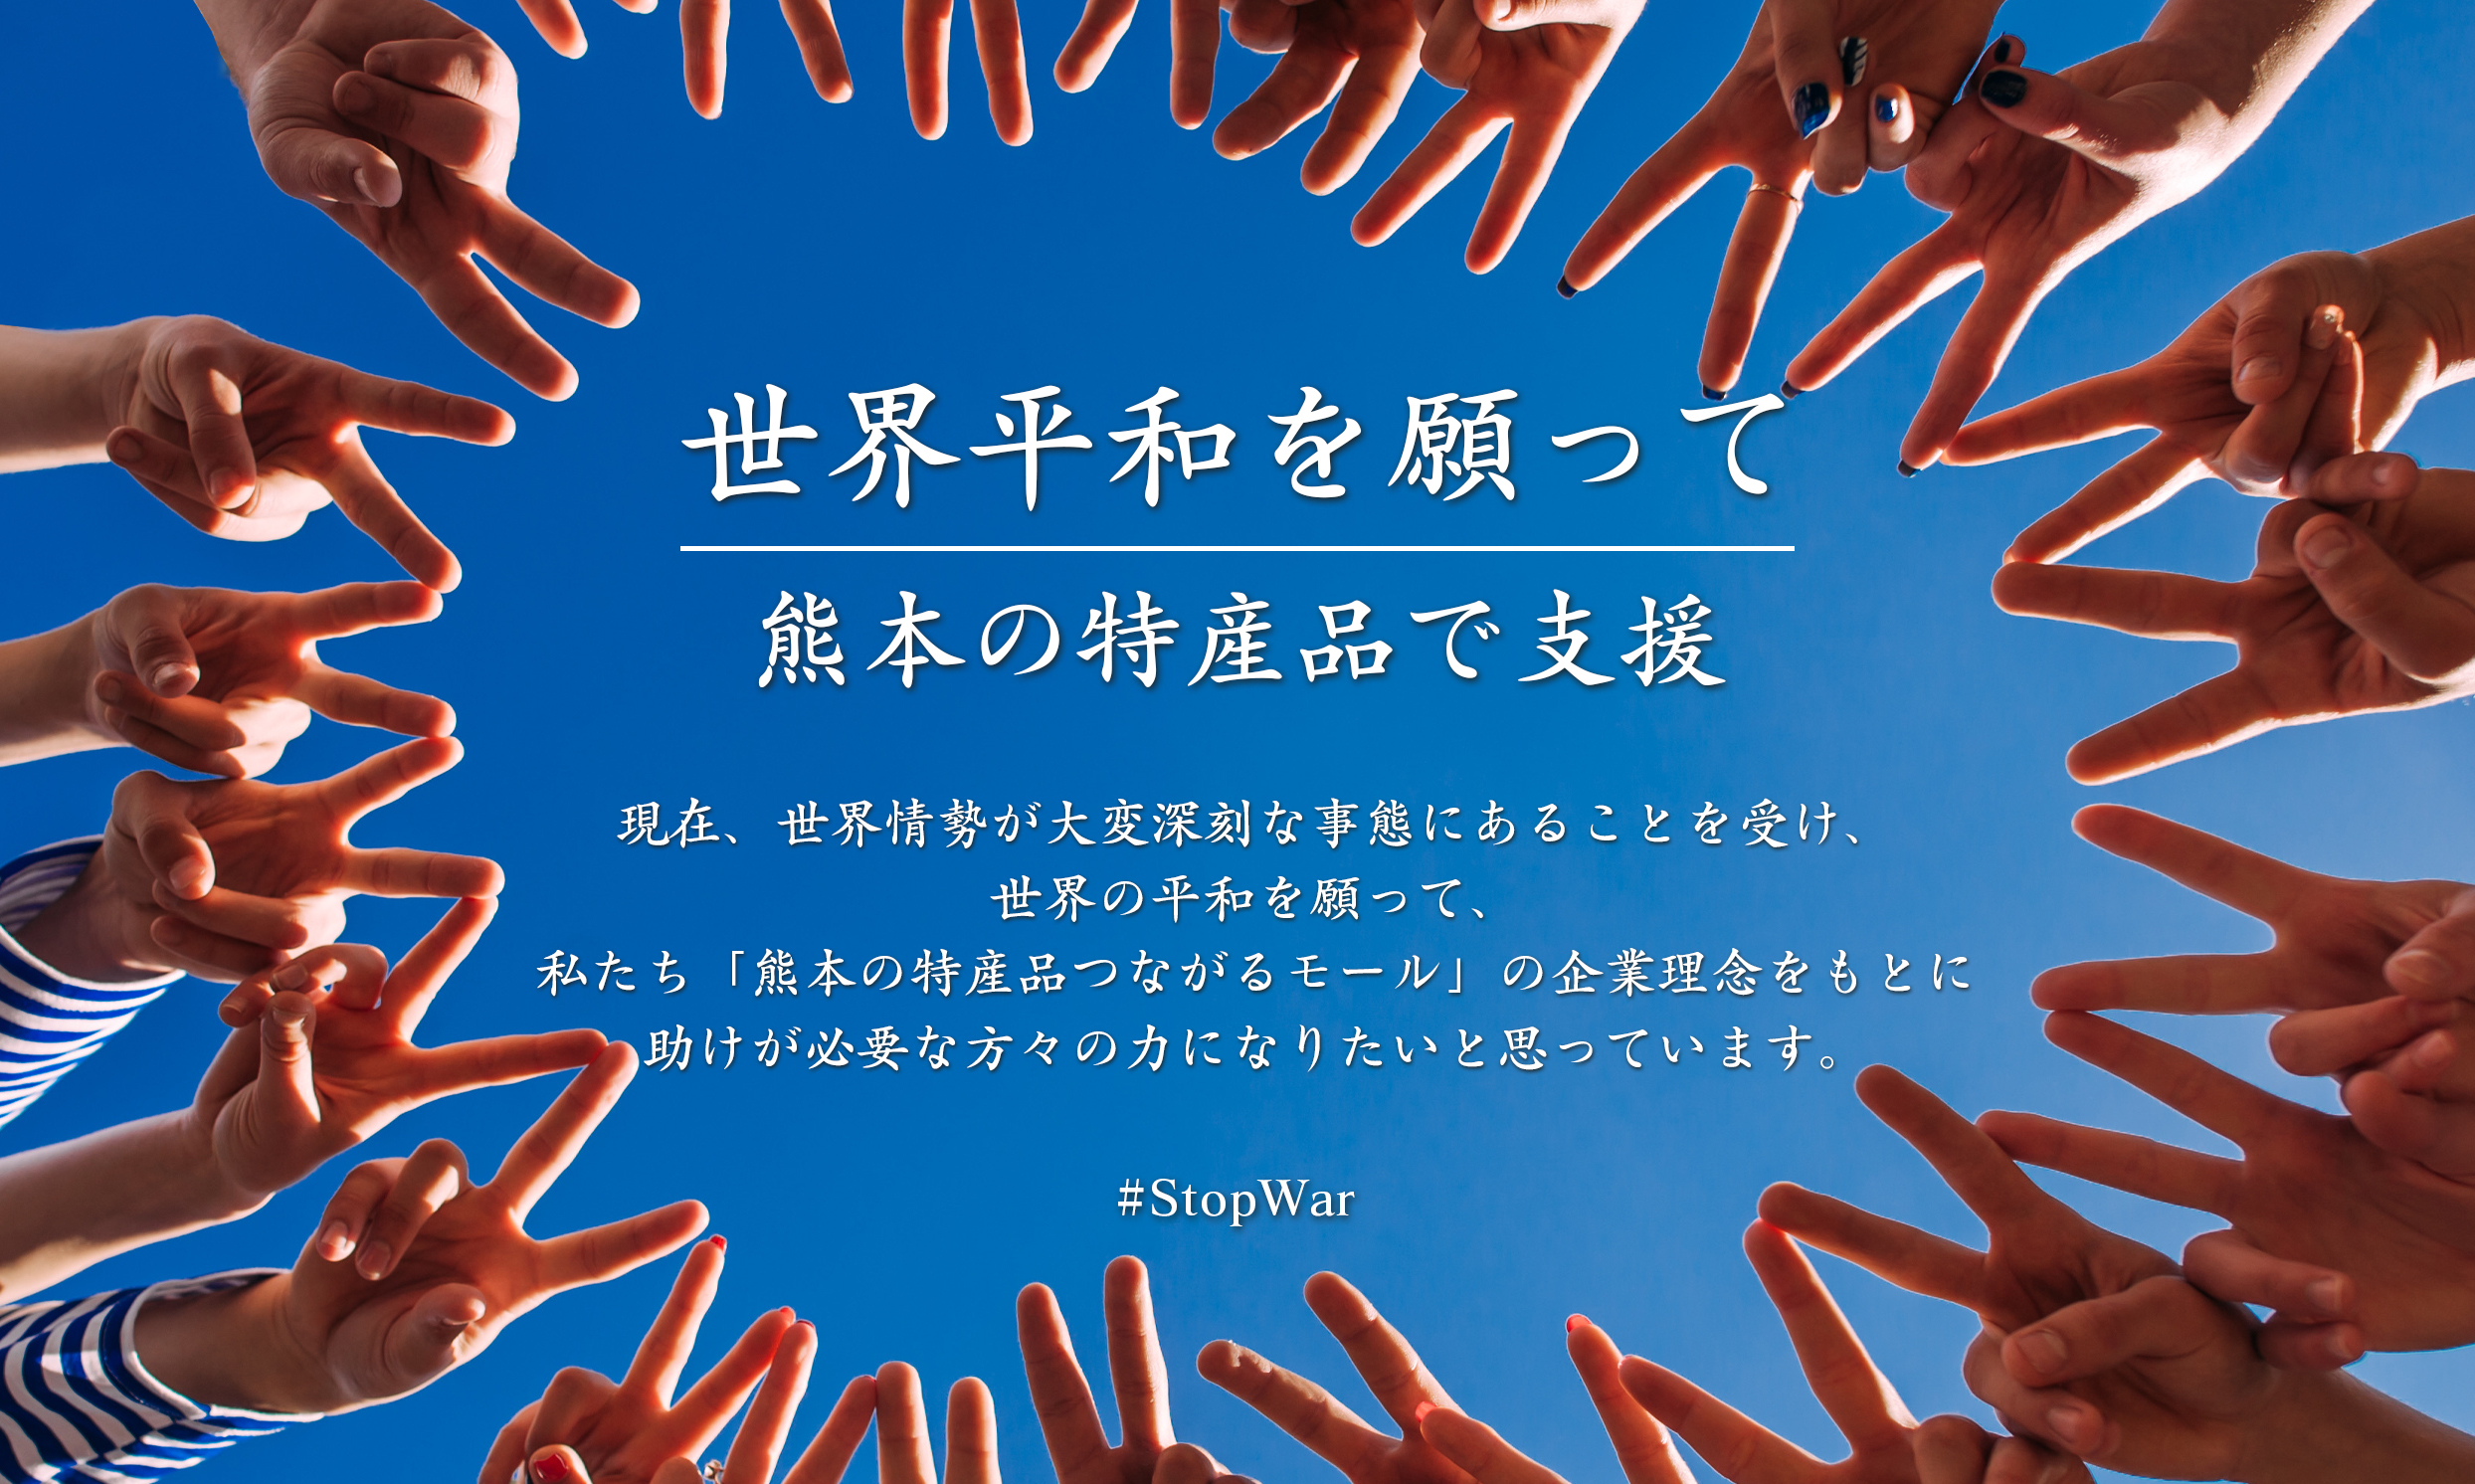 静岡に「コロッケ」がやってくる？！　
2022年3月24日(木)に
『コロッケのころっ家 清水店』がグランドオープン